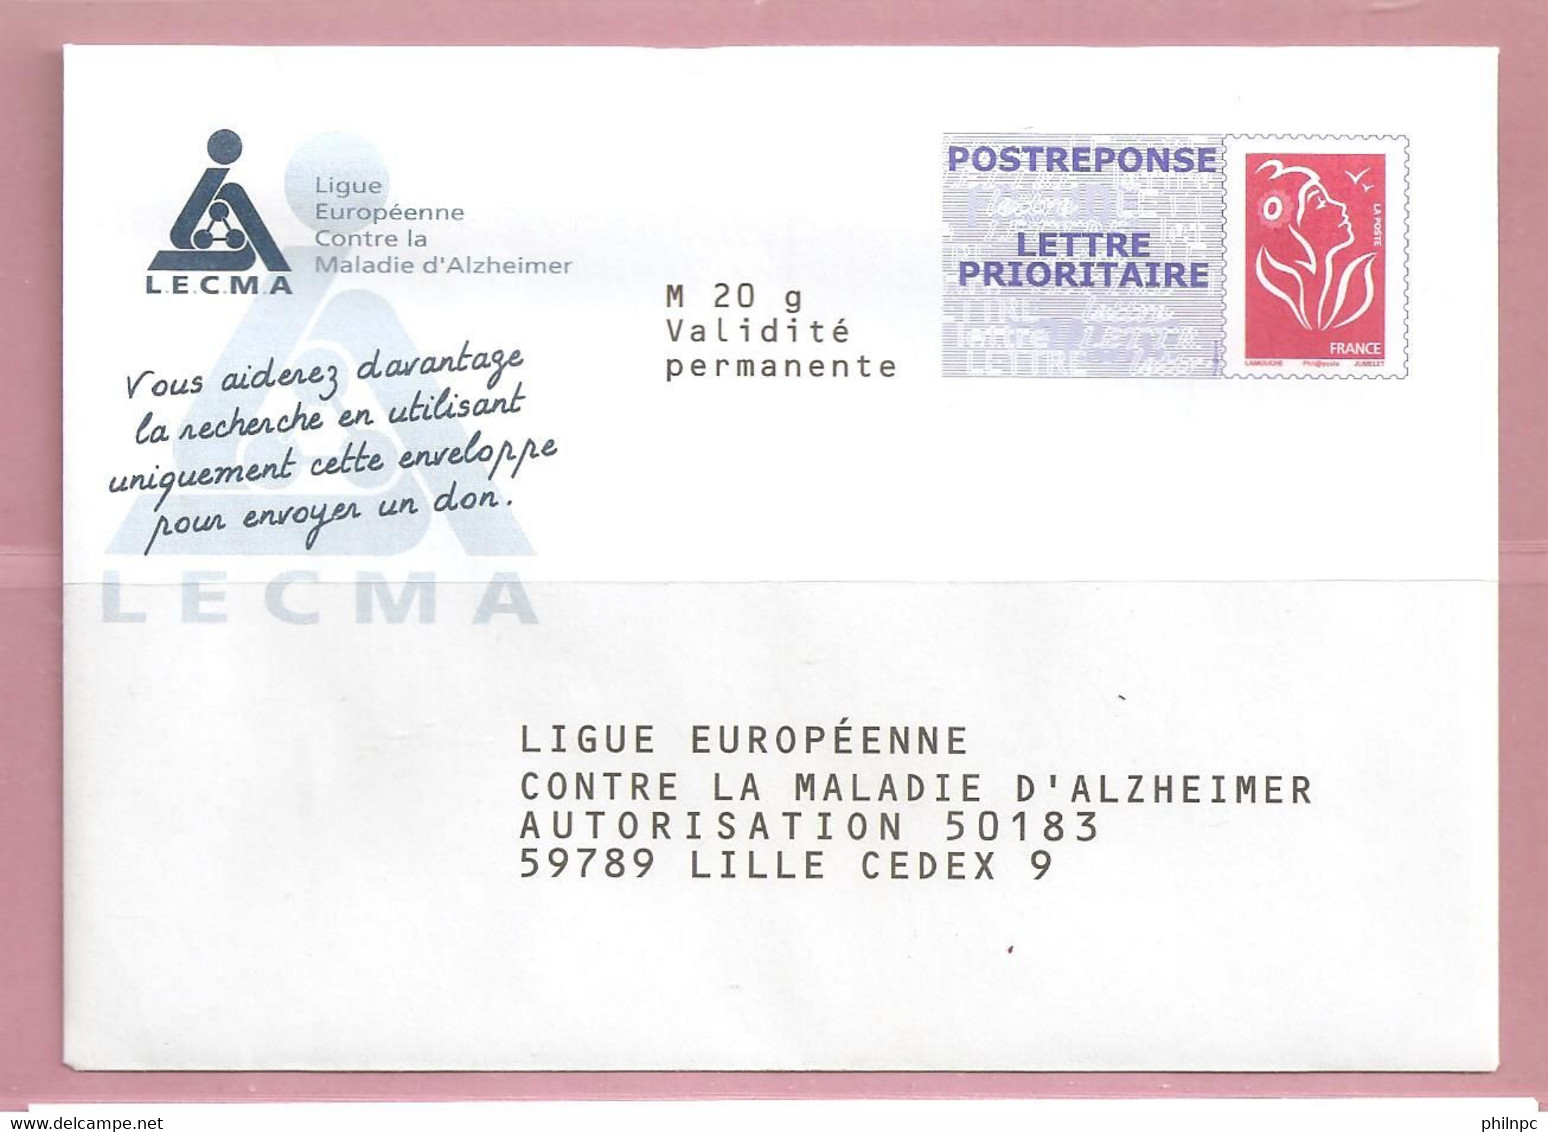 France, Prêt à Poster Réponse, Postréponse, 3734A, Lecma, Ligue Euro Contre La Maladie D'Alzheimer, Marianne De Lamouche - Prêts-à-poster:Answer/Lamouche